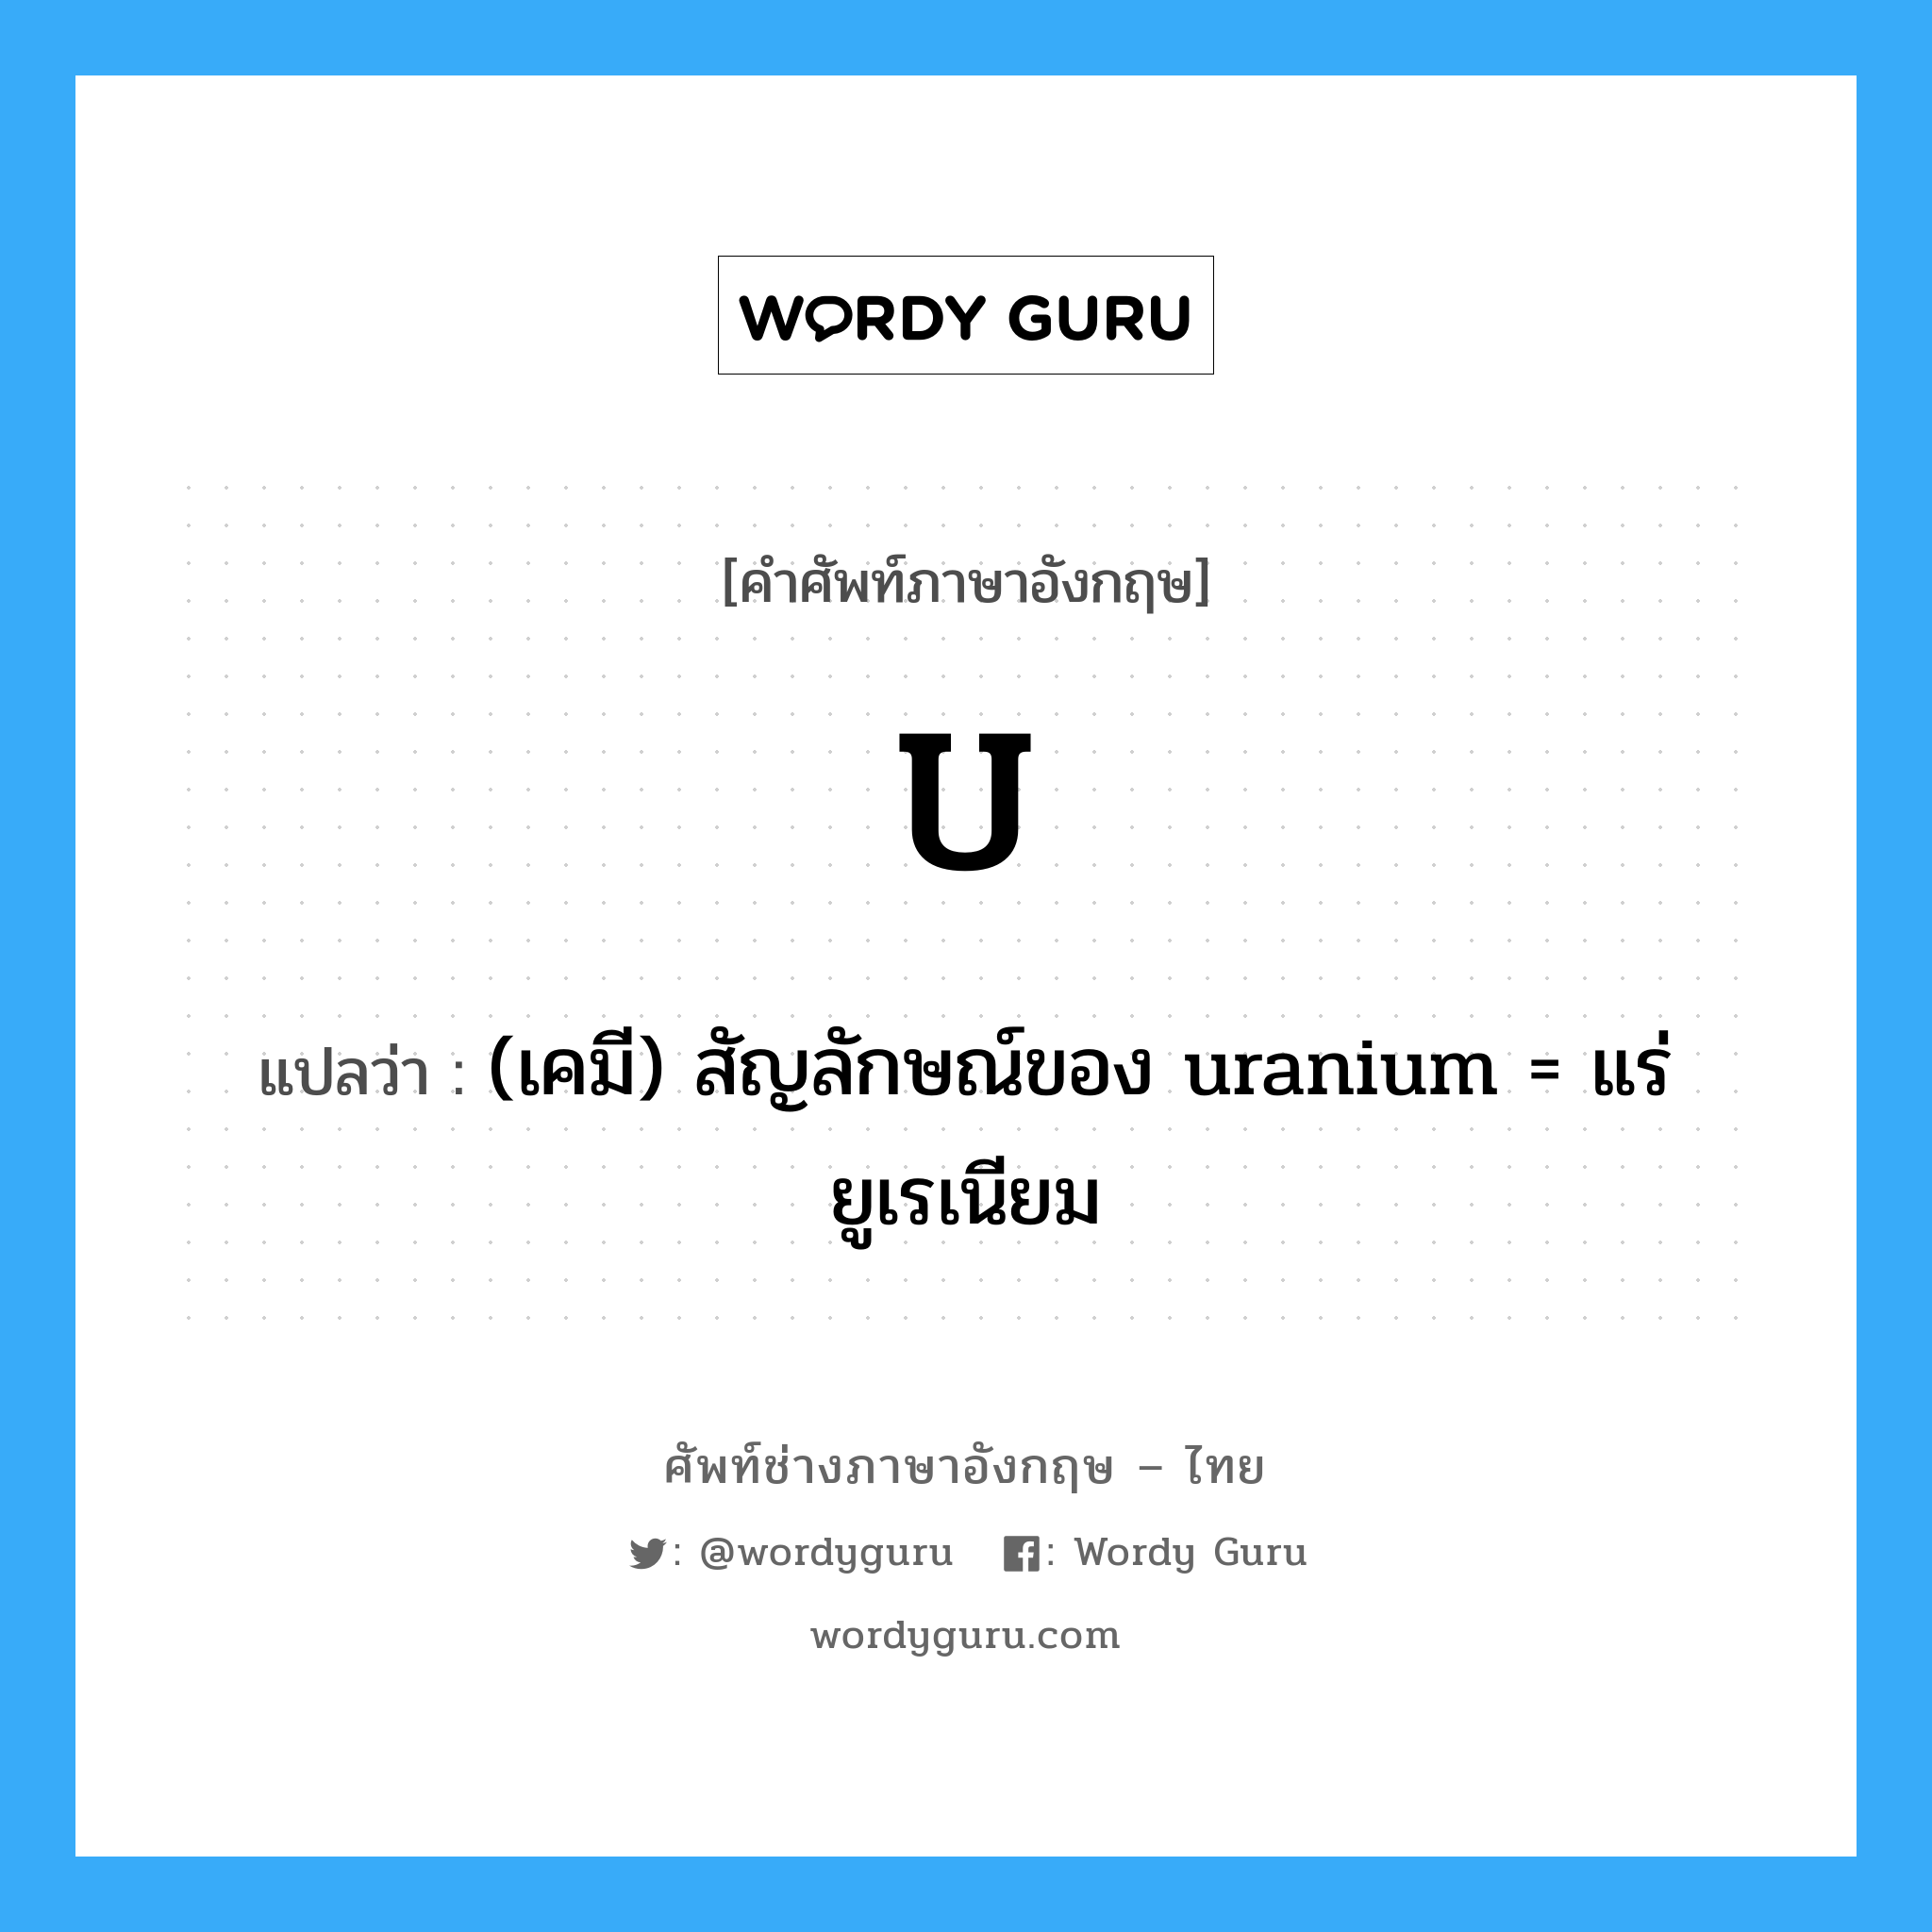 (เคมี) สัญลักษณ์ของ uranium = แร่ยูเรเนียม ภาษาอังกฤษ?, คำศัพท์ช่างภาษาอังกฤษ - ไทย (เคมี) สัญลักษณ์ของ uranium = แร่ยูเรเนียม คำศัพท์ภาษาอังกฤษ (เคมี) สัญลักษณ์ของ uranium = แร่ยูเรเนียม แปลว่า U